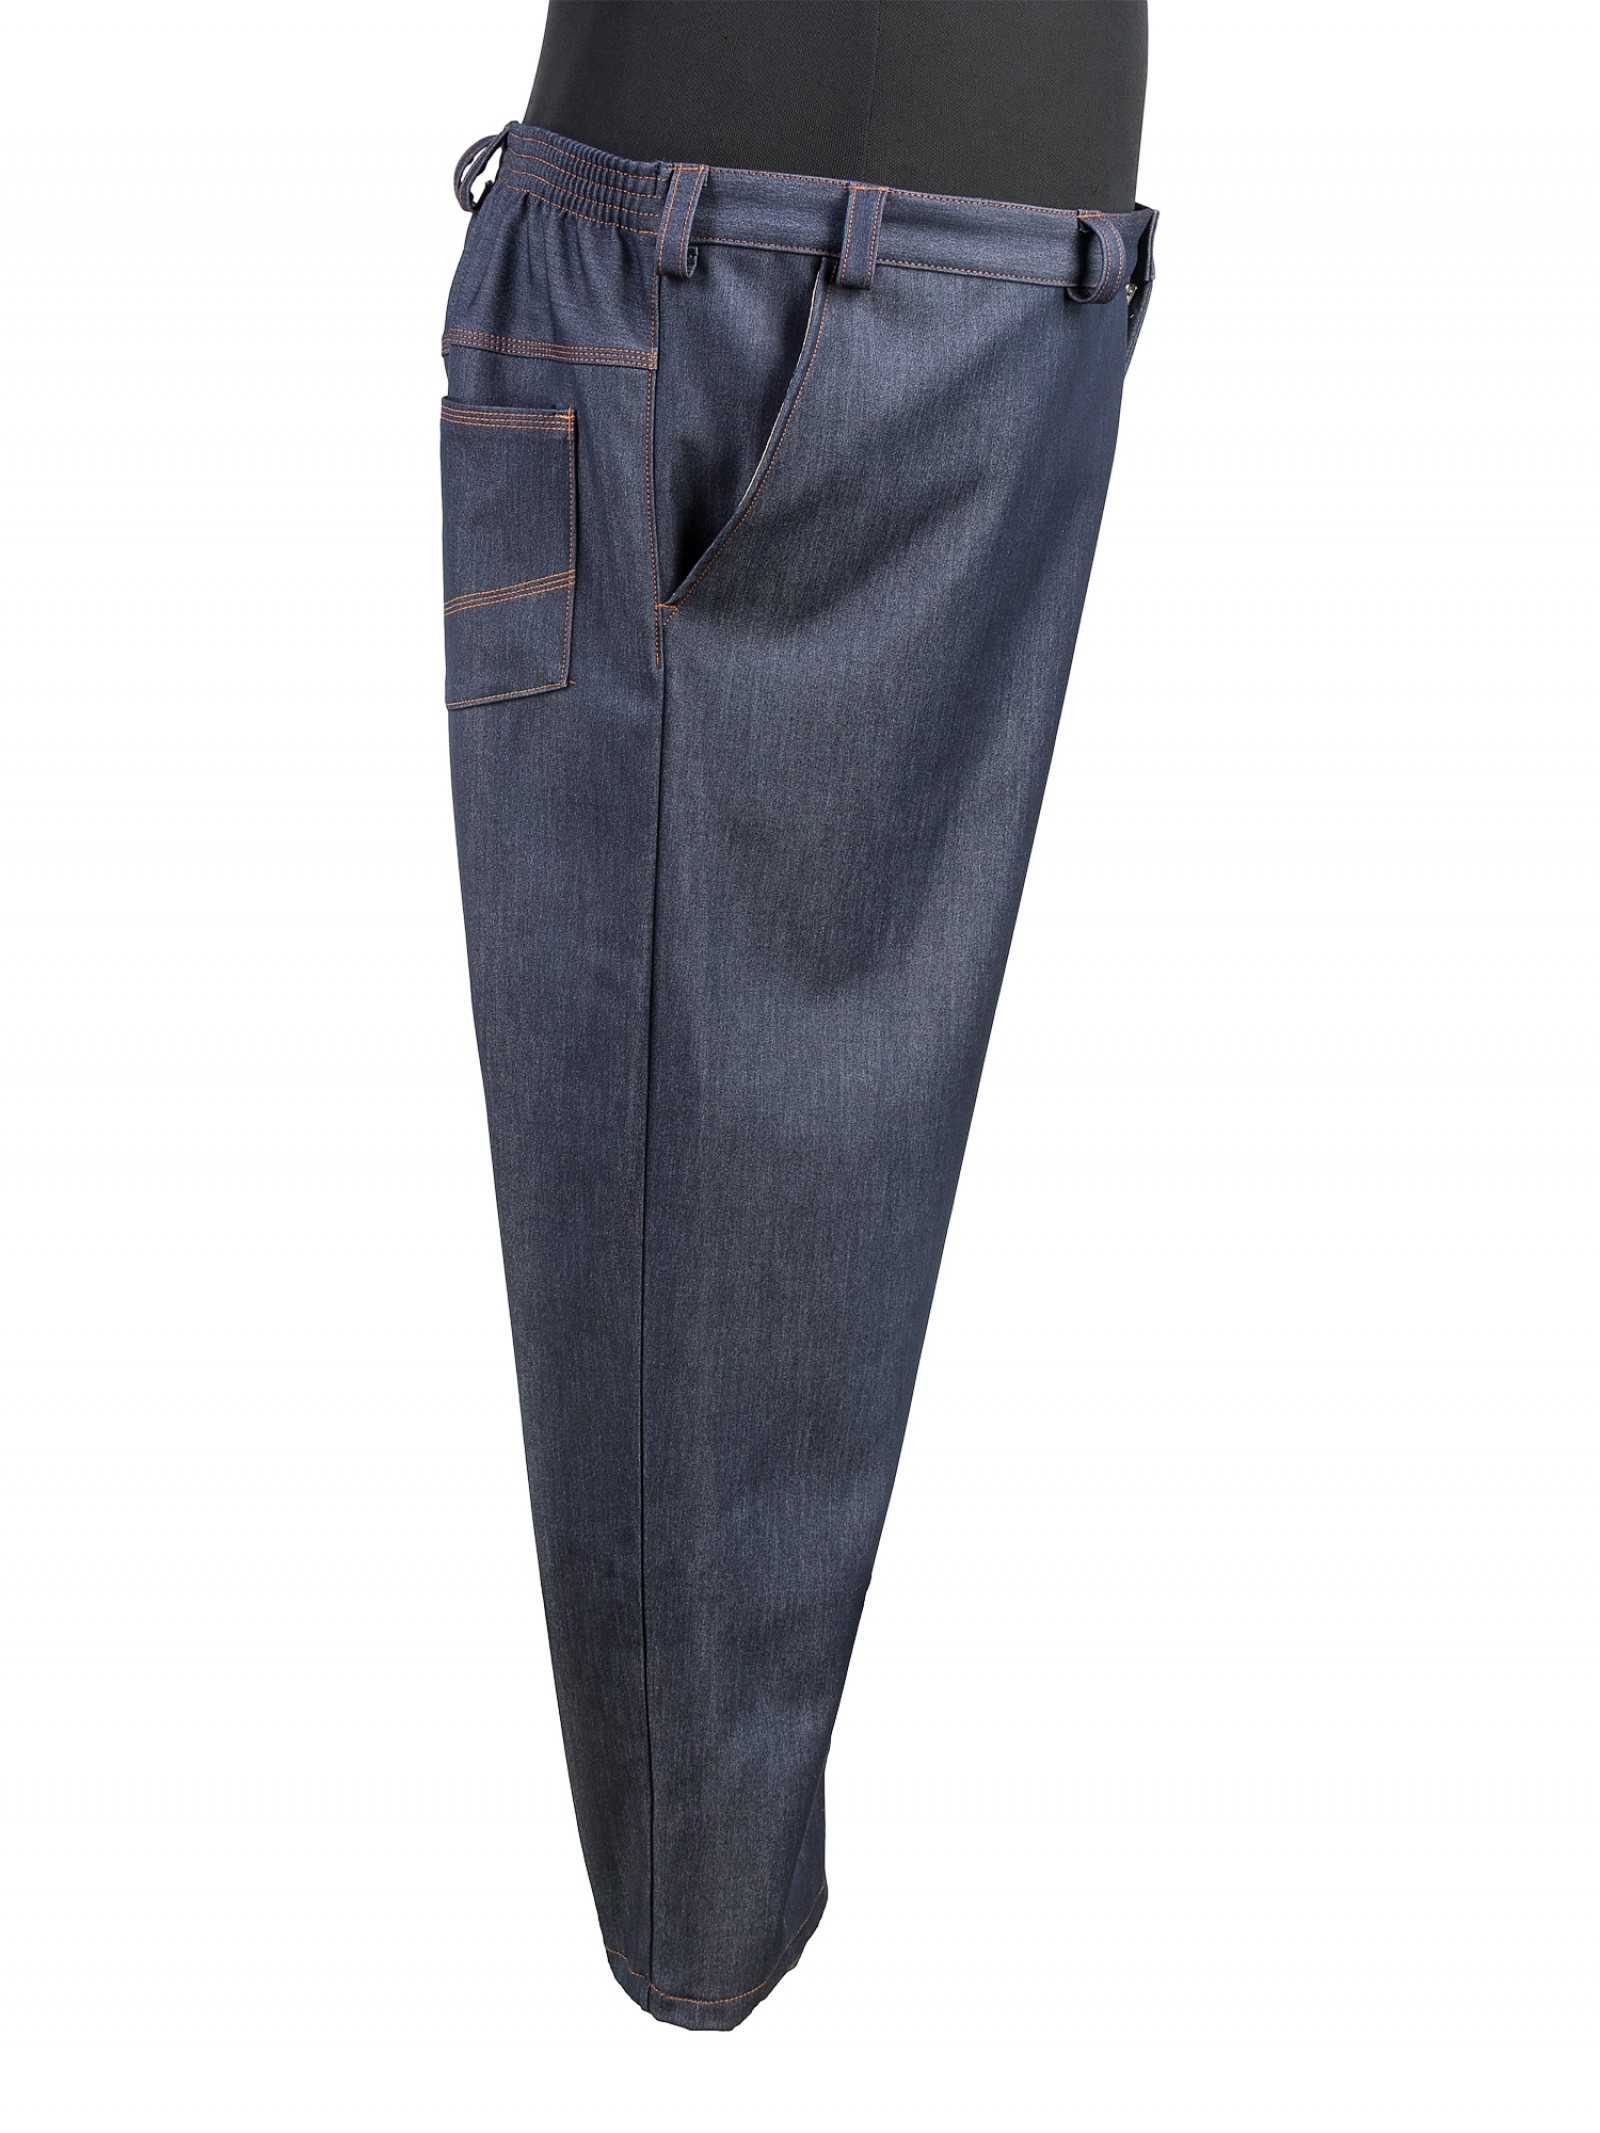 Купить Брюки большого размера утепленные из джинсовой ткани со спандексомза 4500 руб. в интернет-магазине Мой-размер - Магазин Мой-Размер